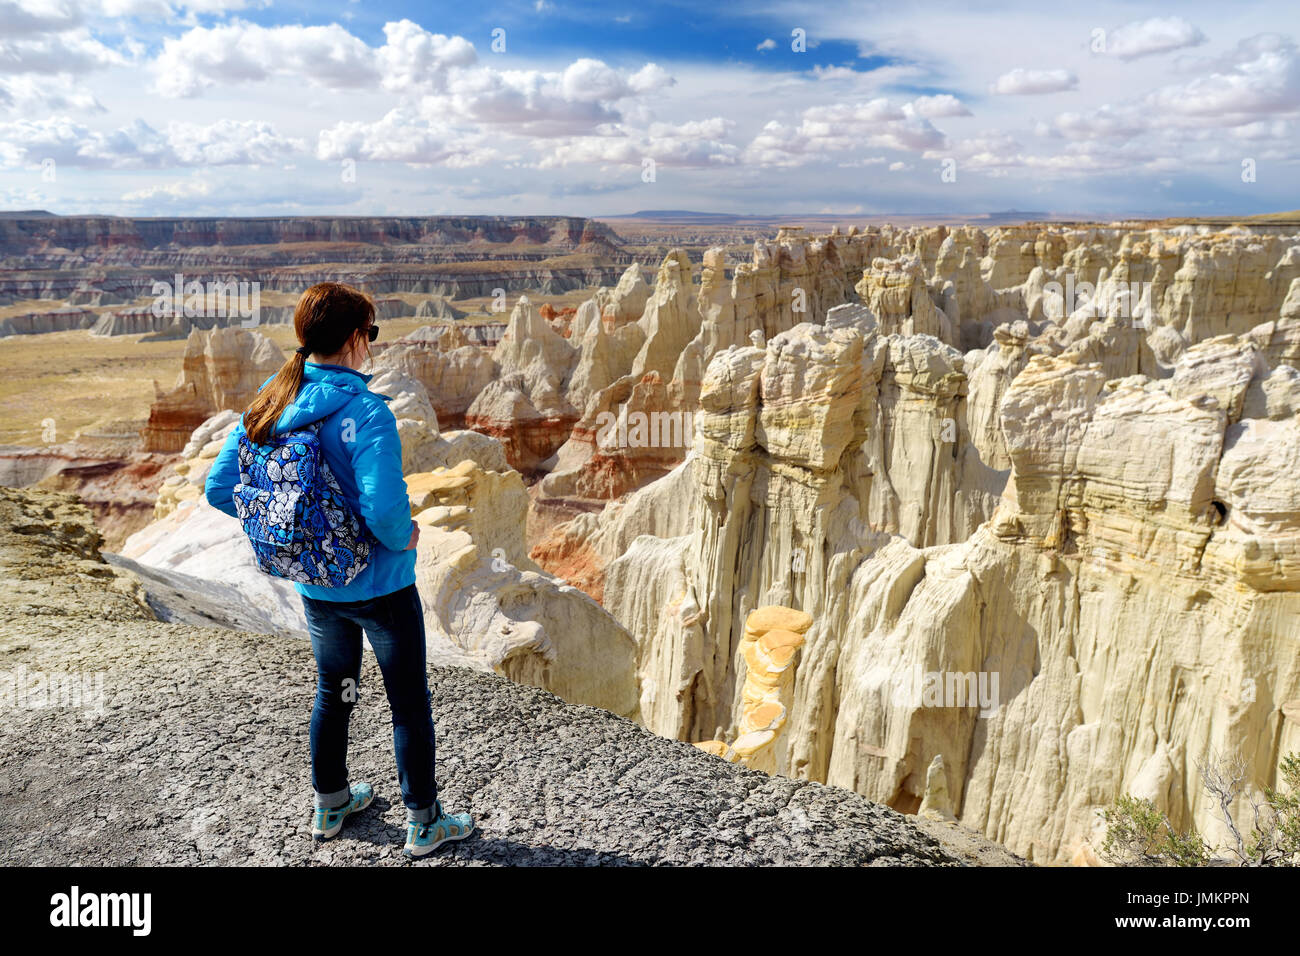 Escursionista ammirando le viste mozzafiato di colorate formazioni di pietra arenaria della miniera di carbone di Canyon, Arizona, Stati Uniti d'America Foto Stock